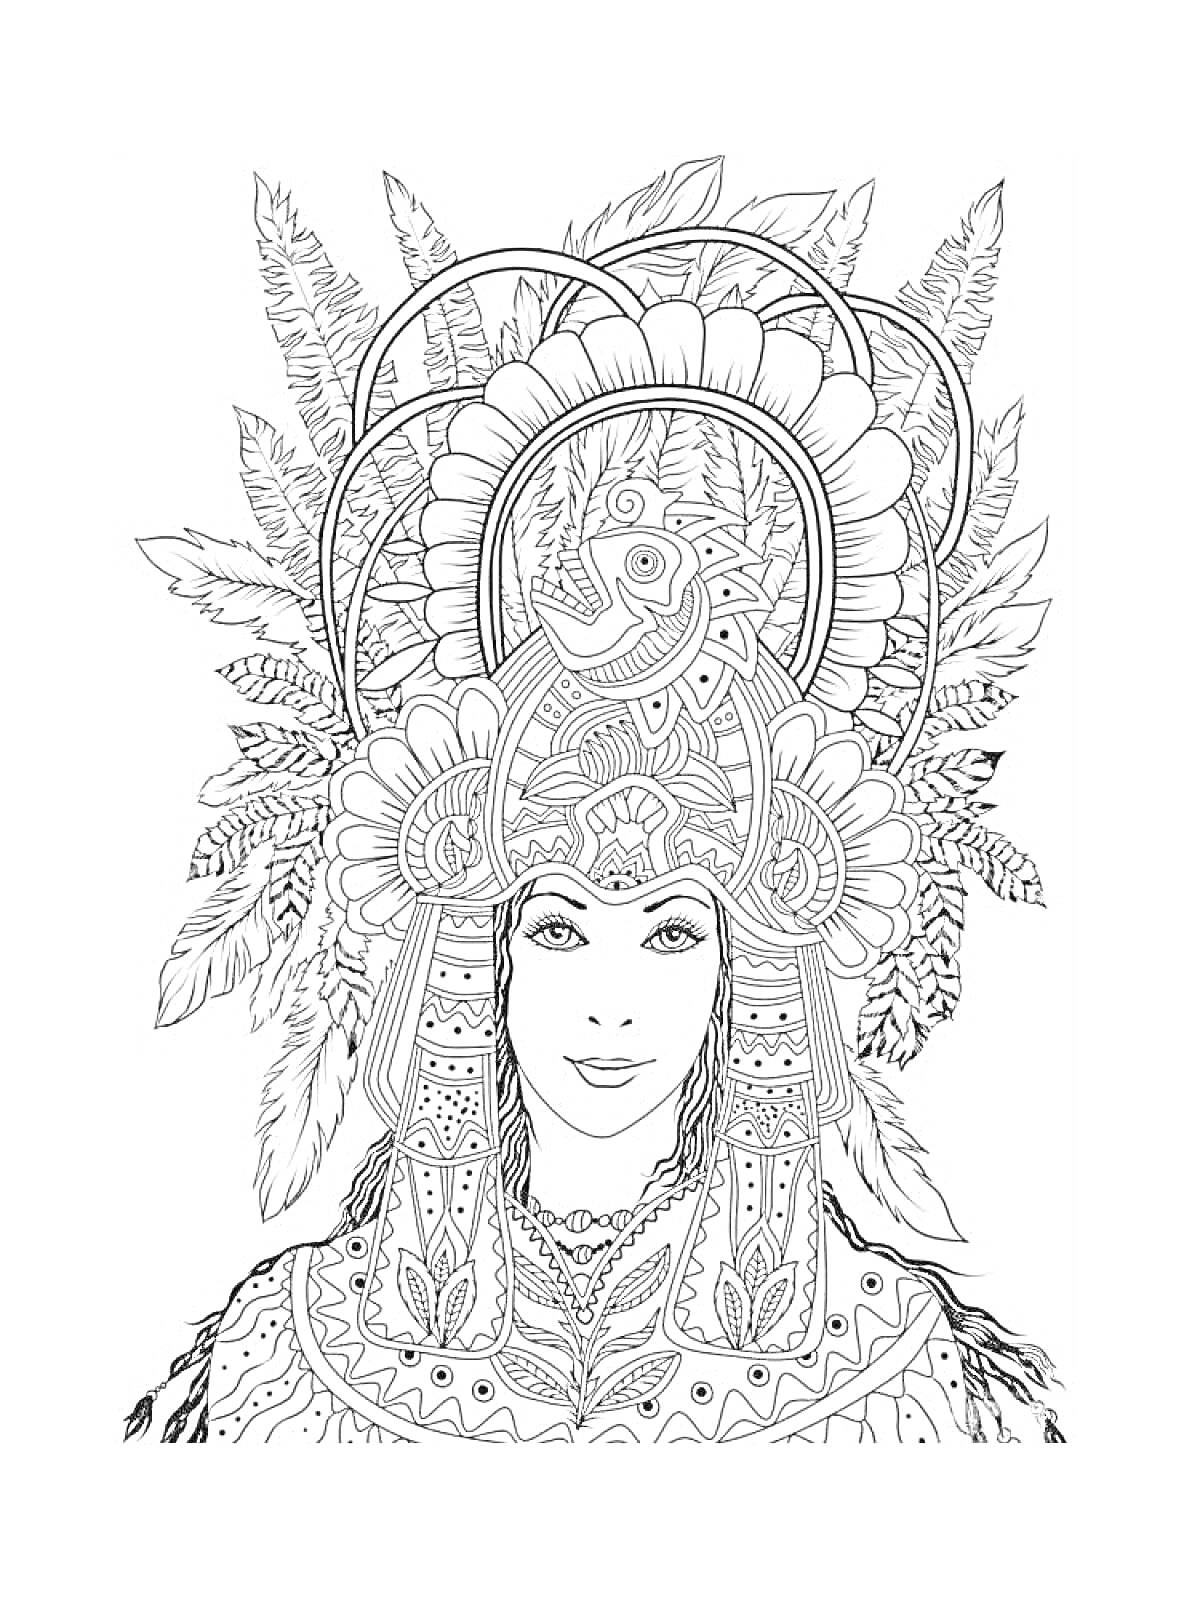 Раскраска Женщина в карнавальном костюме с большим головным убором из перьев и узоров